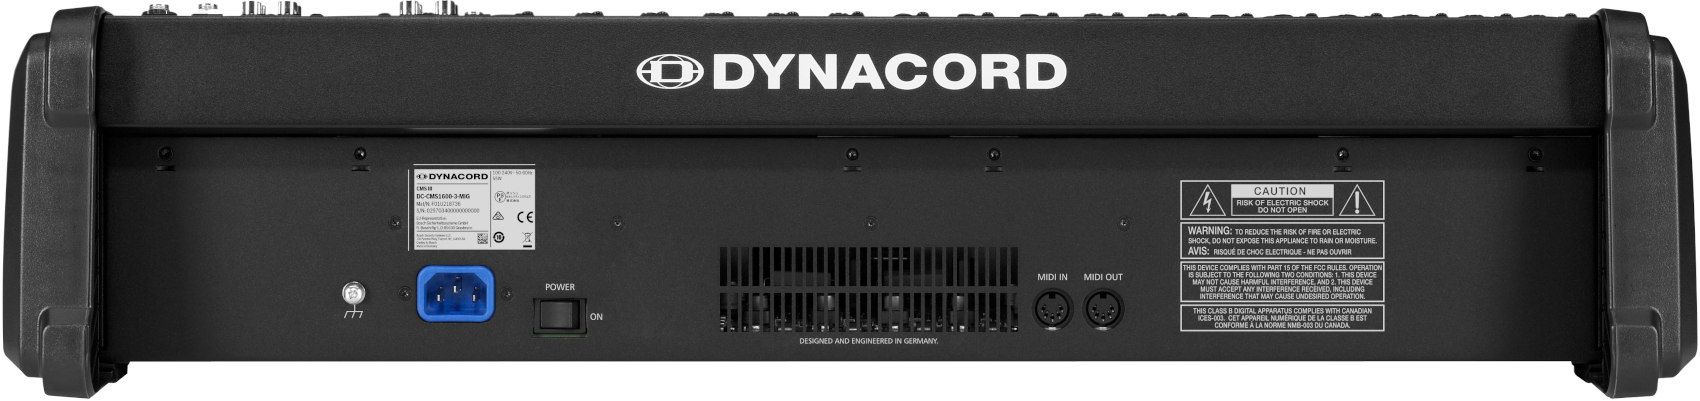 Dynacord CMS 1600-3 - фото 3